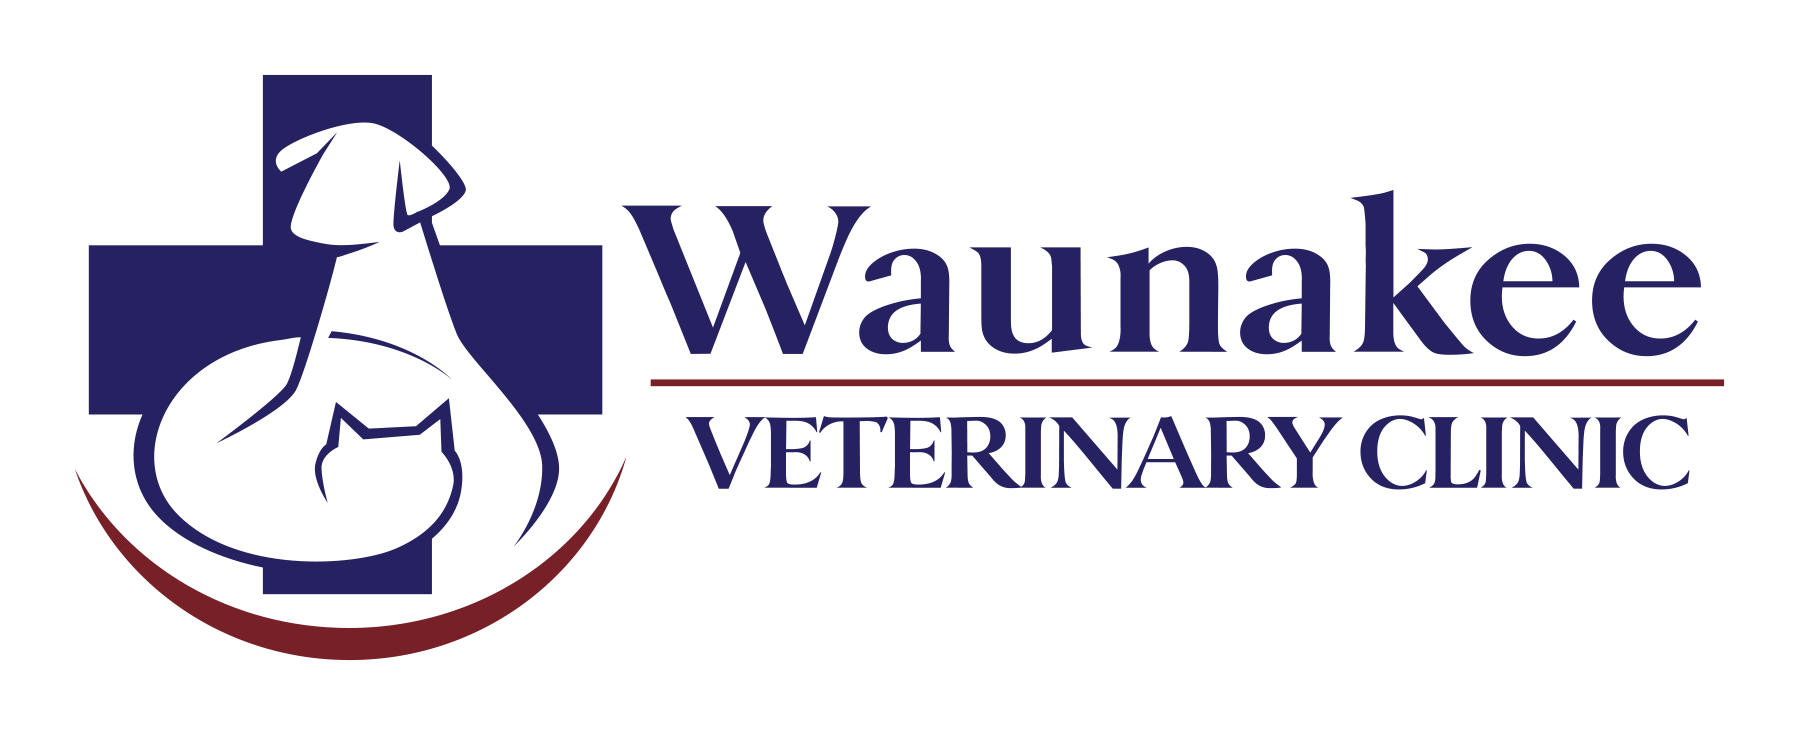 Waunakee Veterinary Clinic